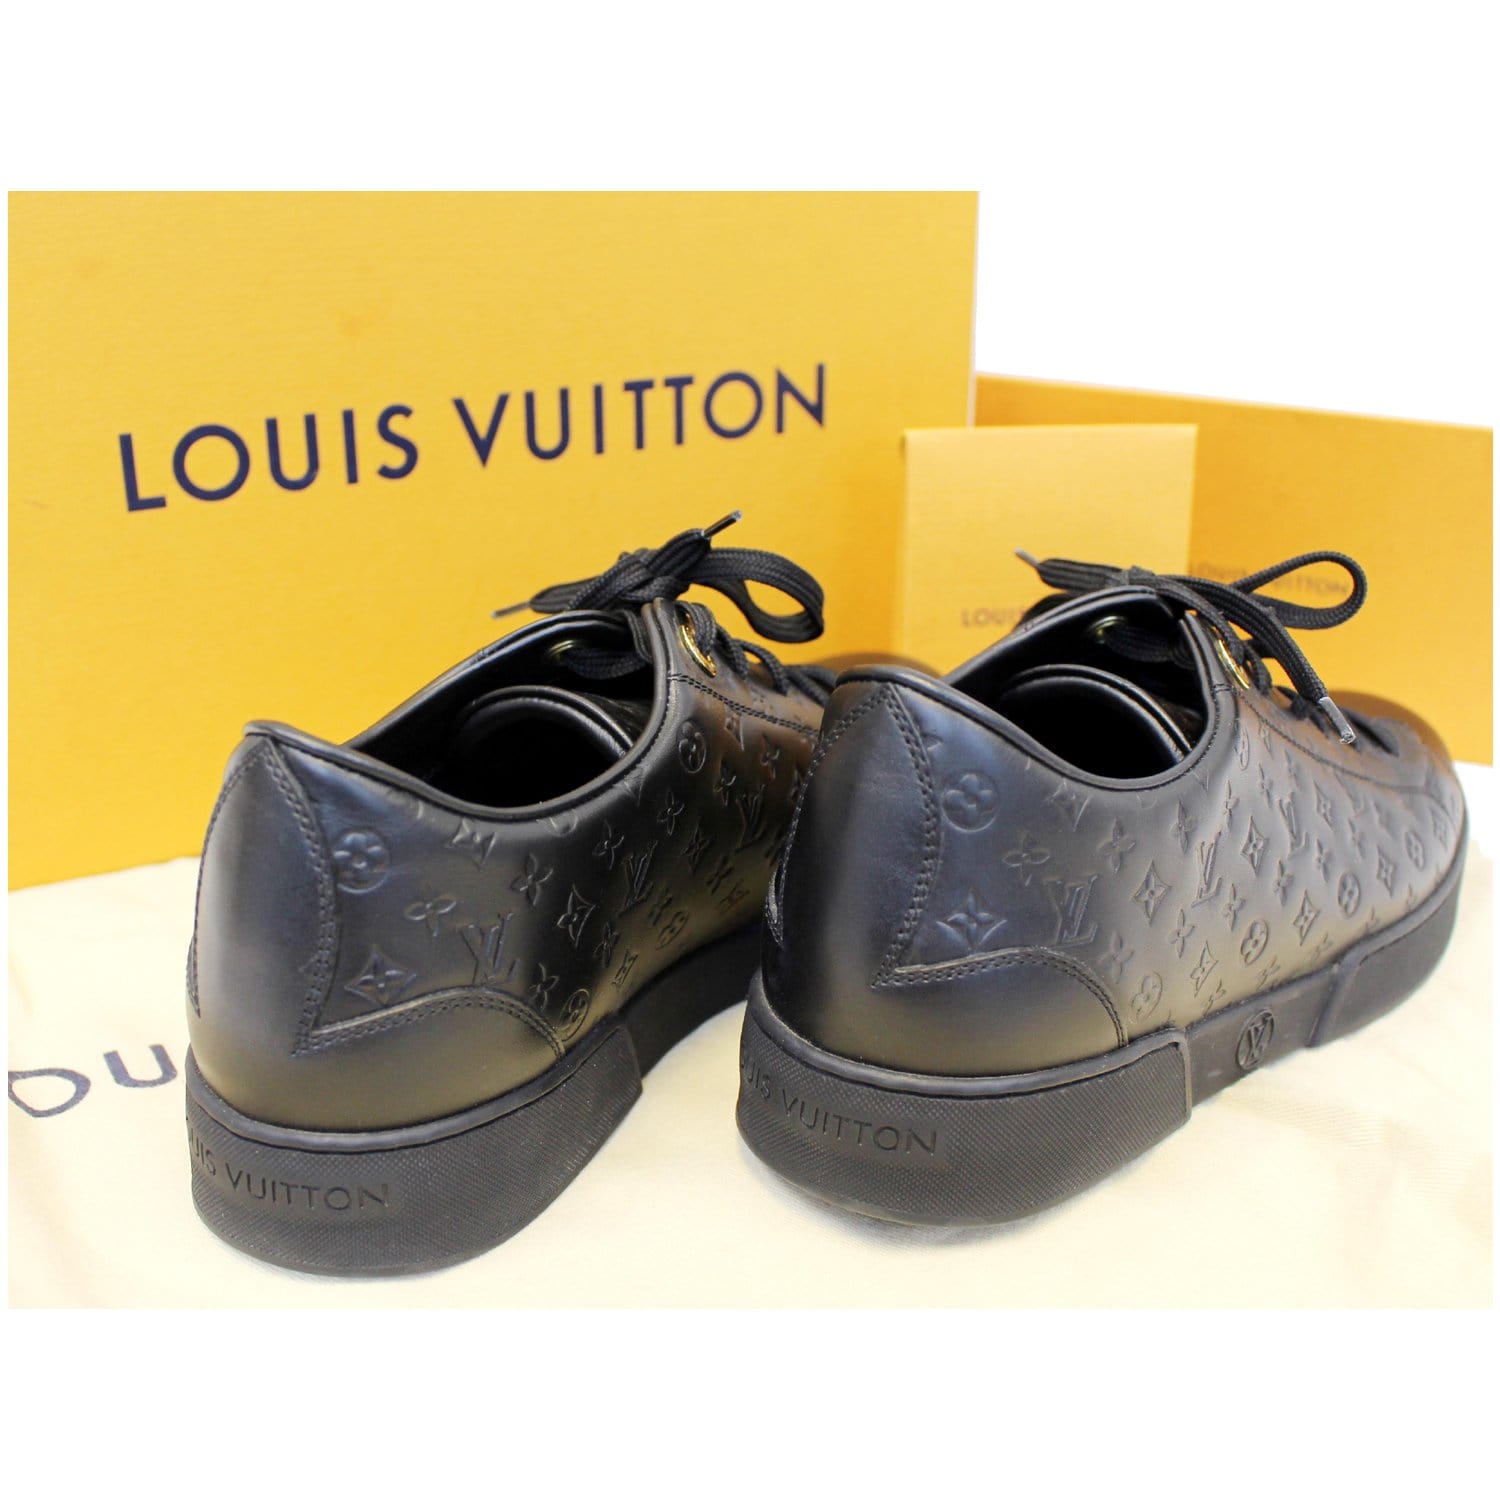 Louis Vuitton ra mắt bộ sưu tập dành riêng cho trẻ em